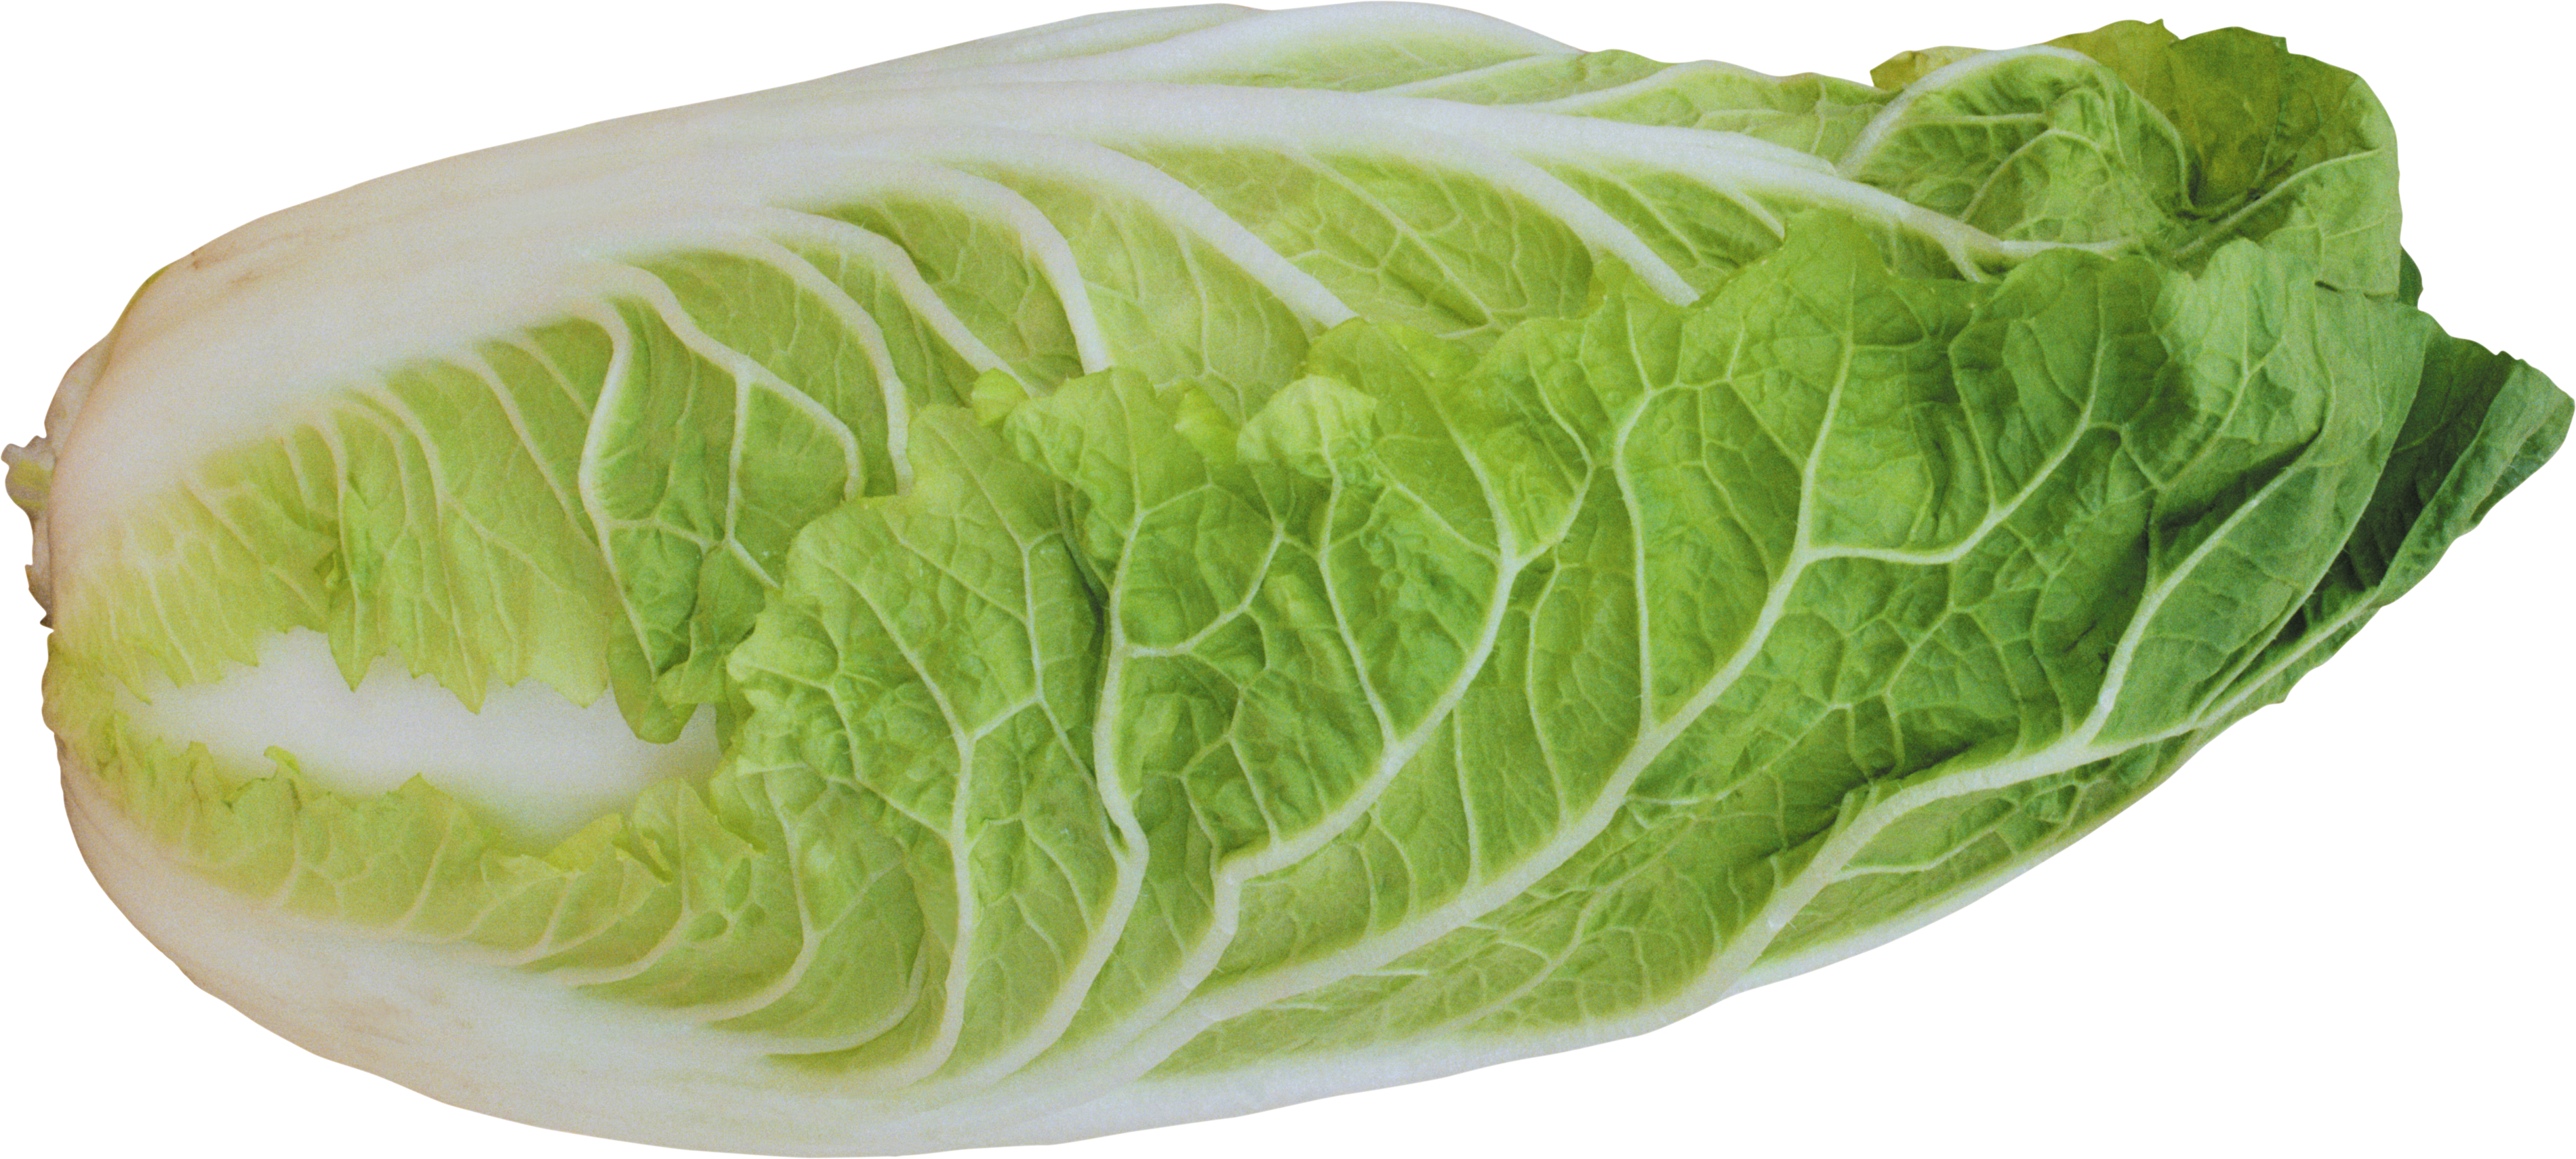 Salad Png Image - Lettuce Transparent Background (3800x1710)